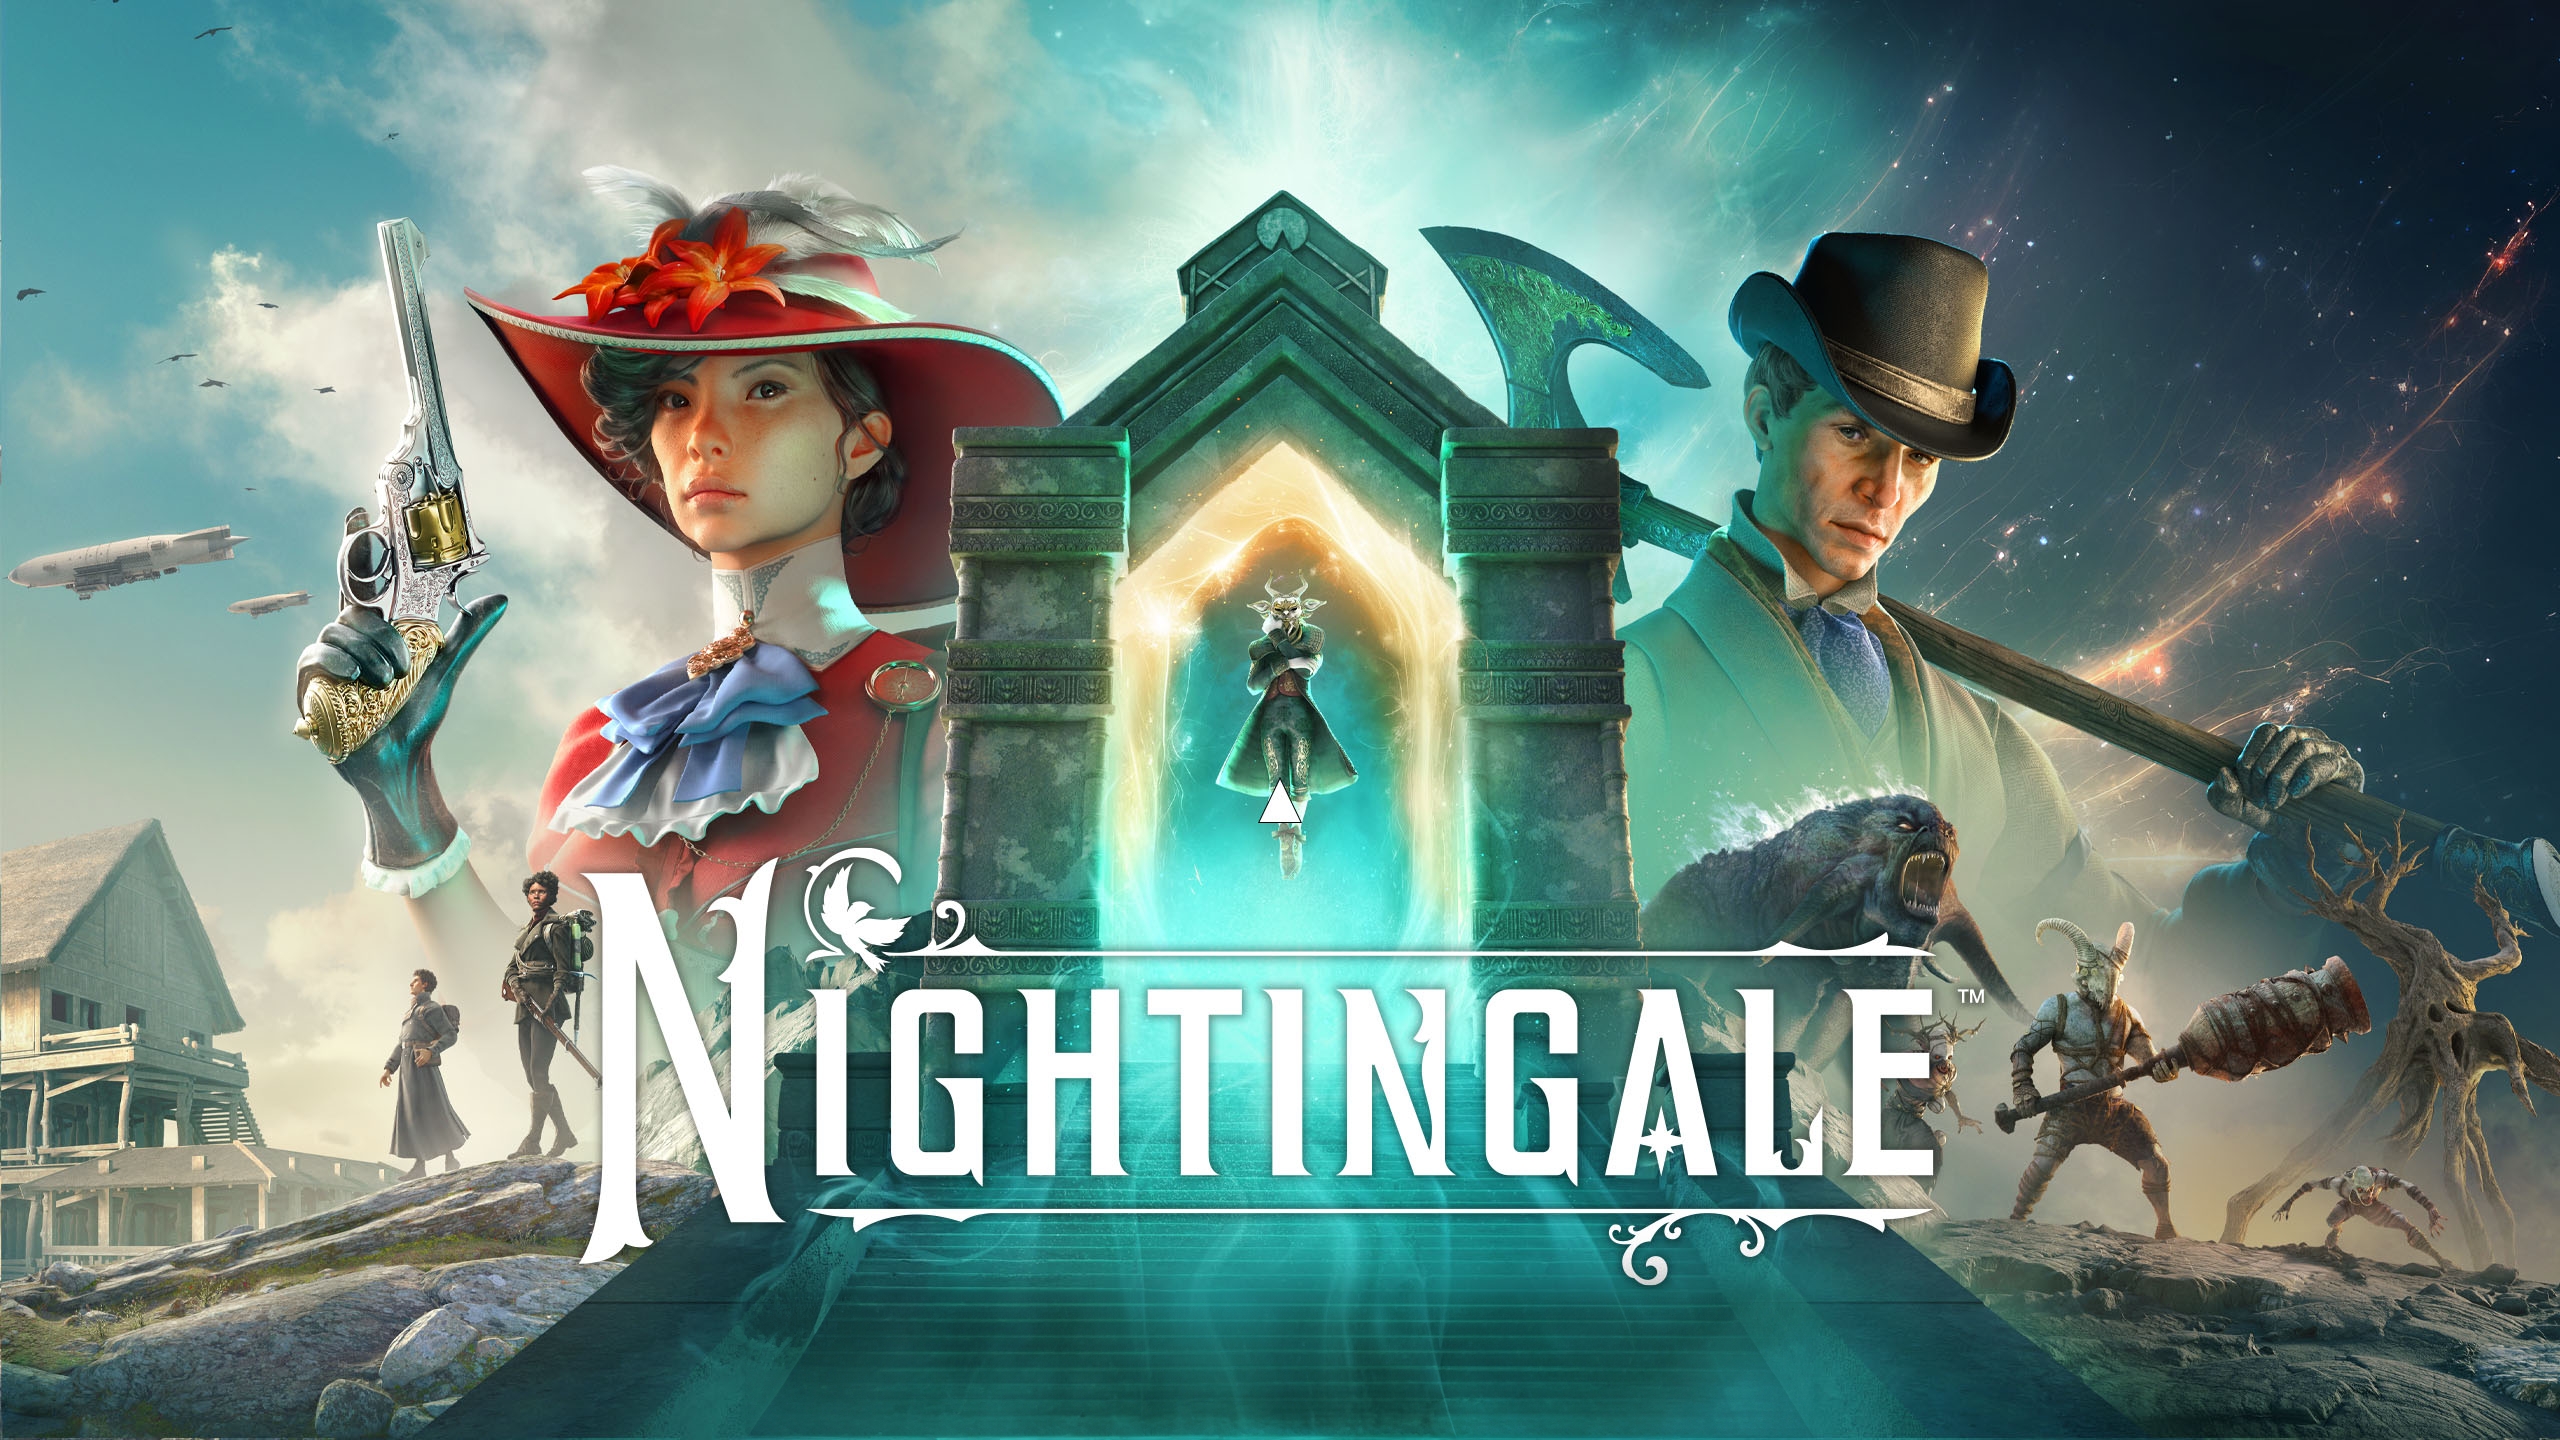 Nightingale on Steam